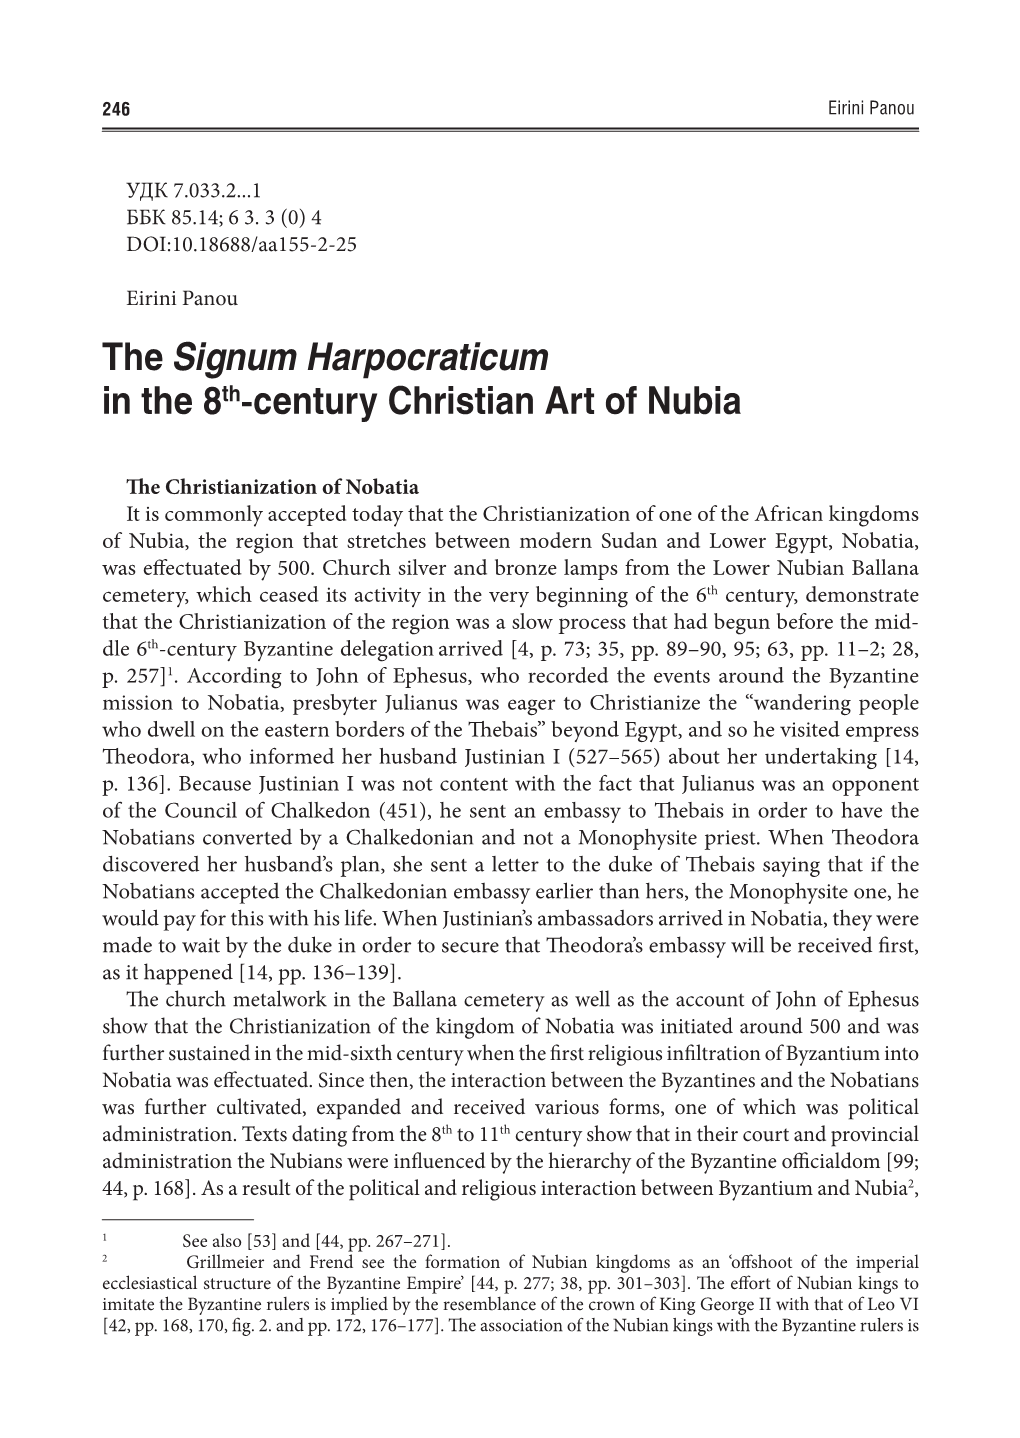 The Signum Harpocraticum in the 8Th-Century Christian Art of Nubia